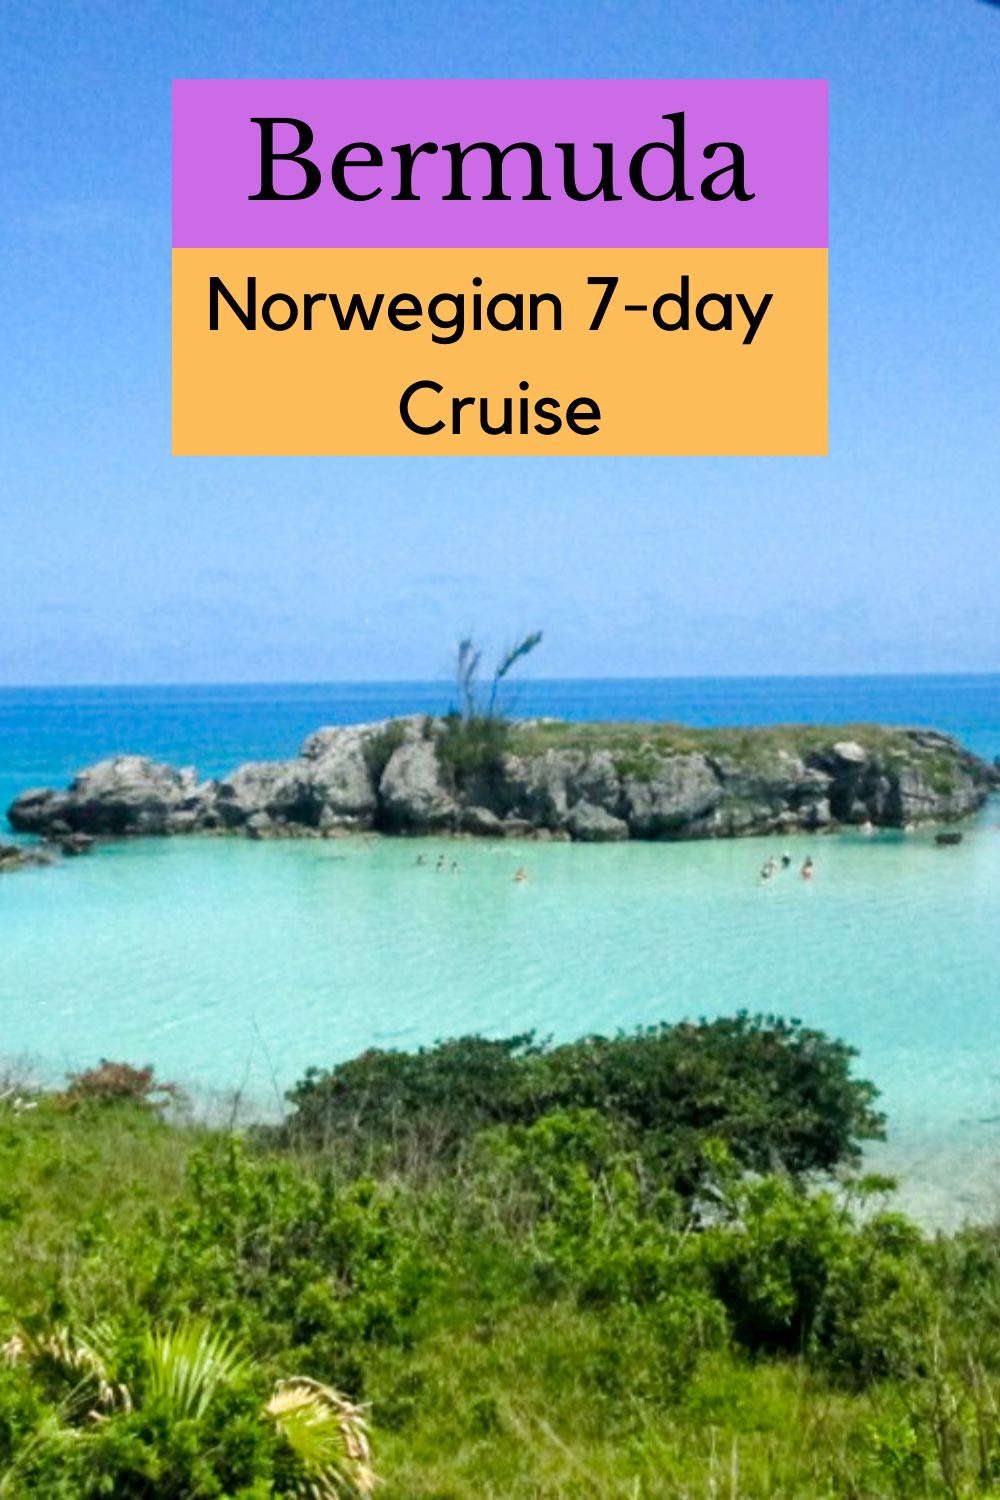 norwegian cruise to bermuda today